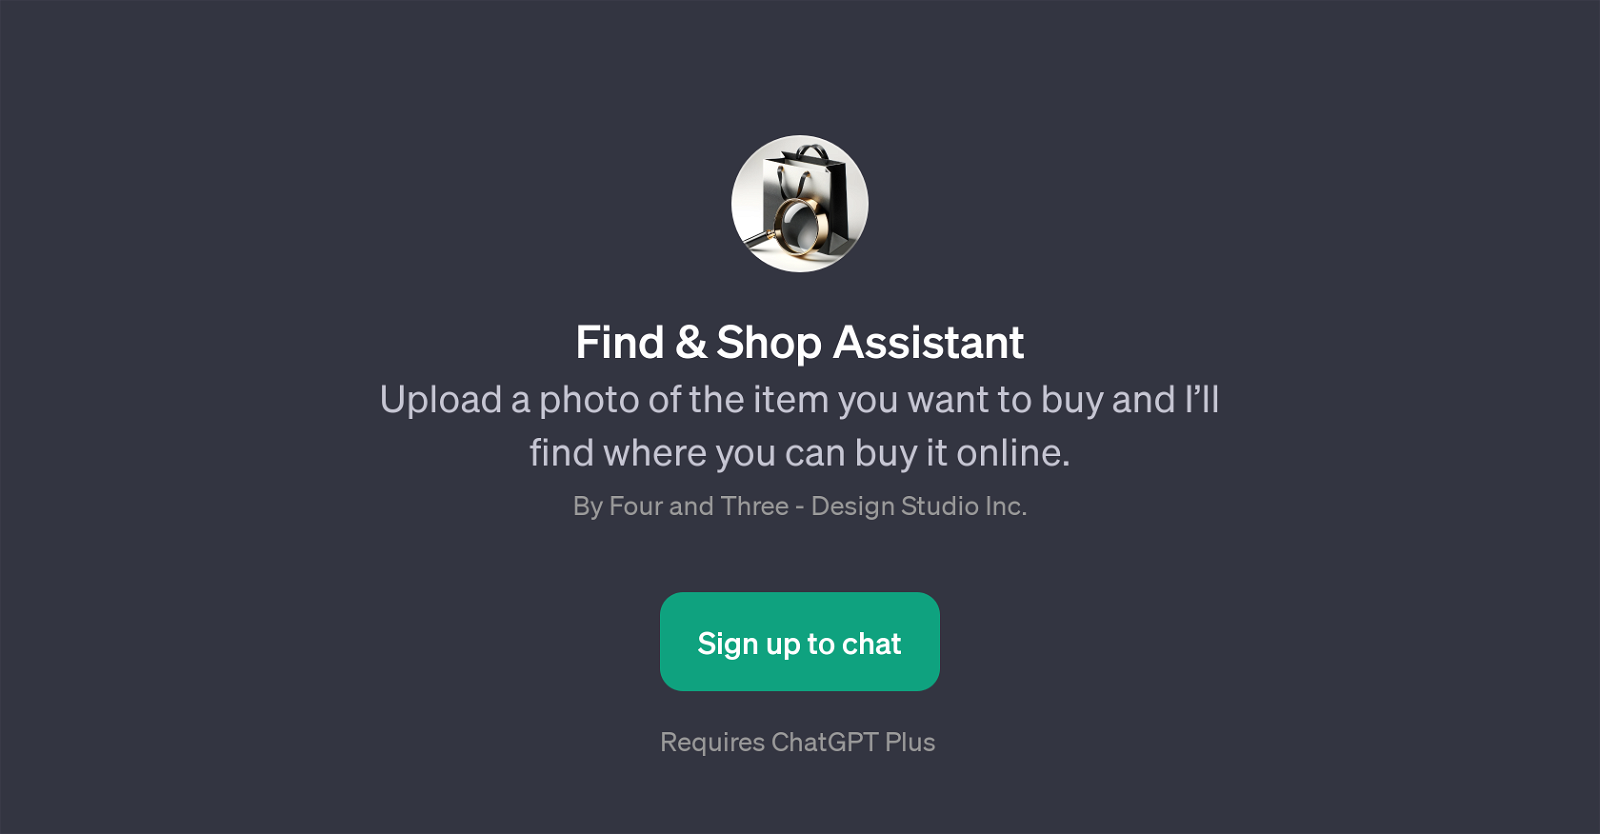 Find & Shop Assistant website